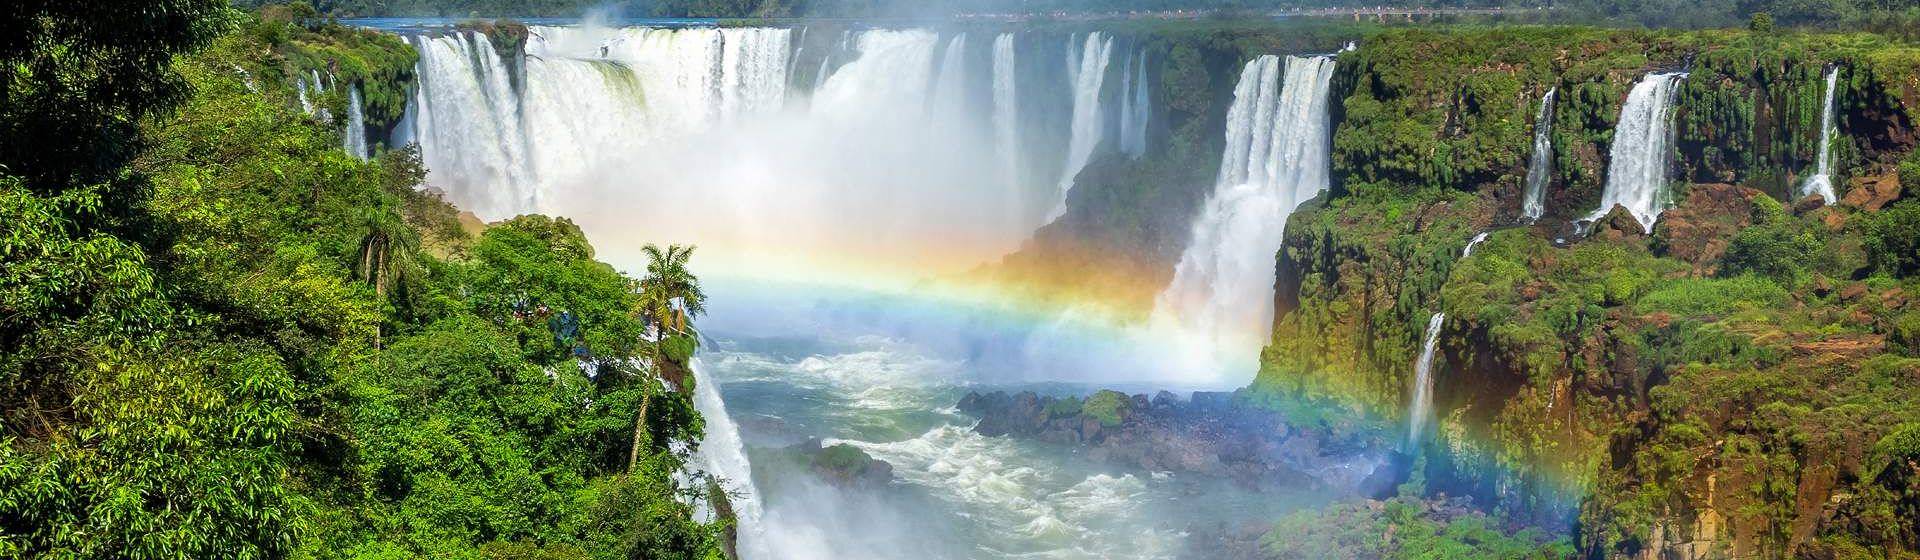 Holidays to Iguazu Falls Image